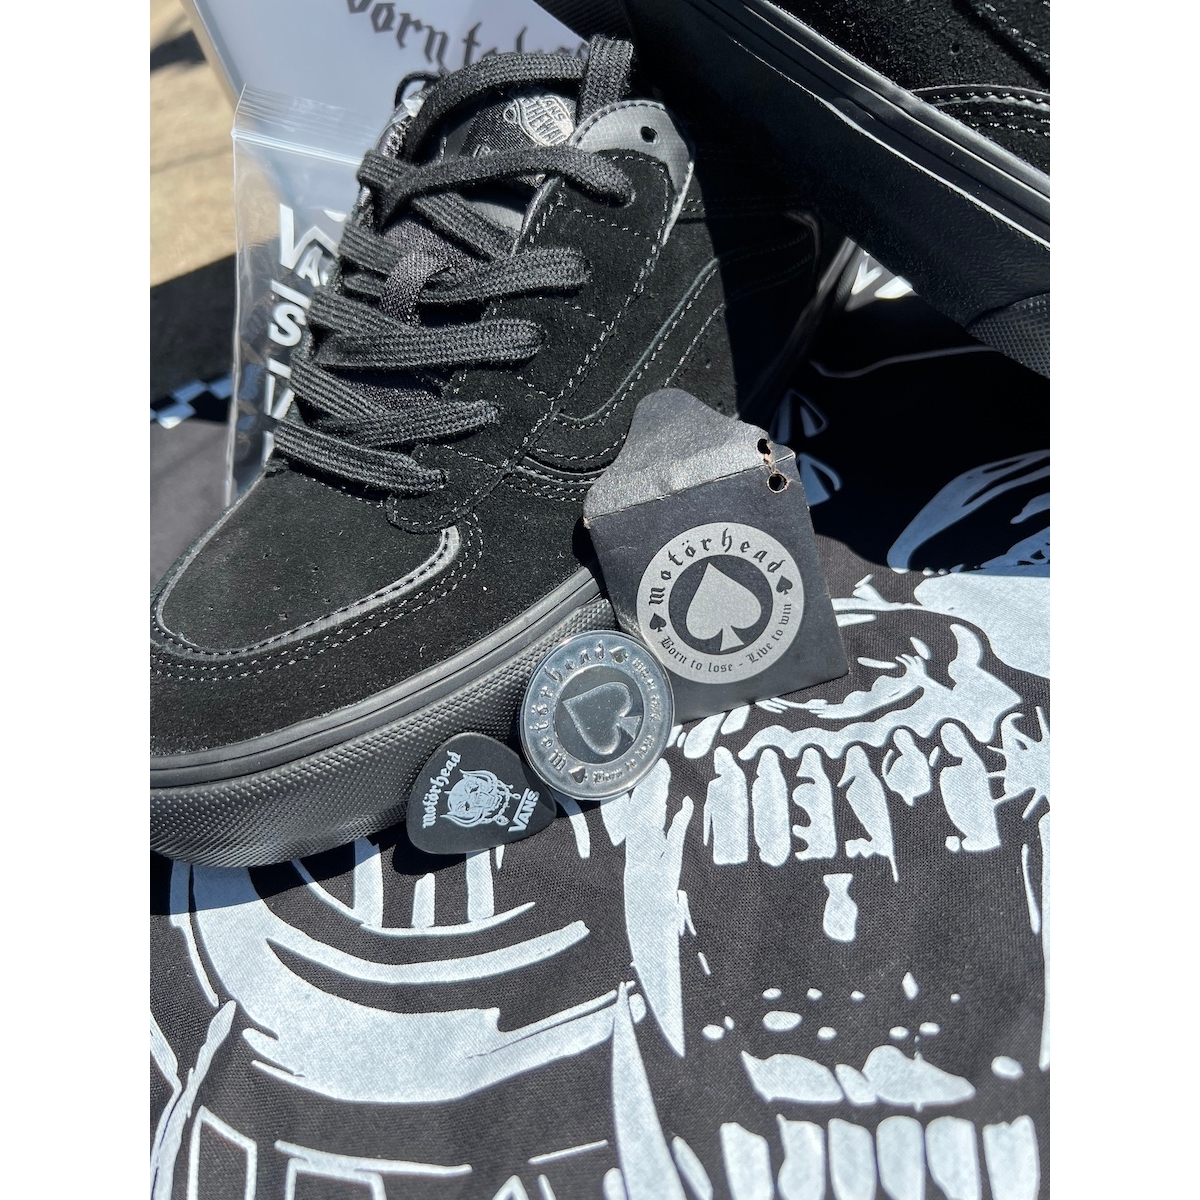 Vans Rowley x Motorhead Footwear at Home Skateshop